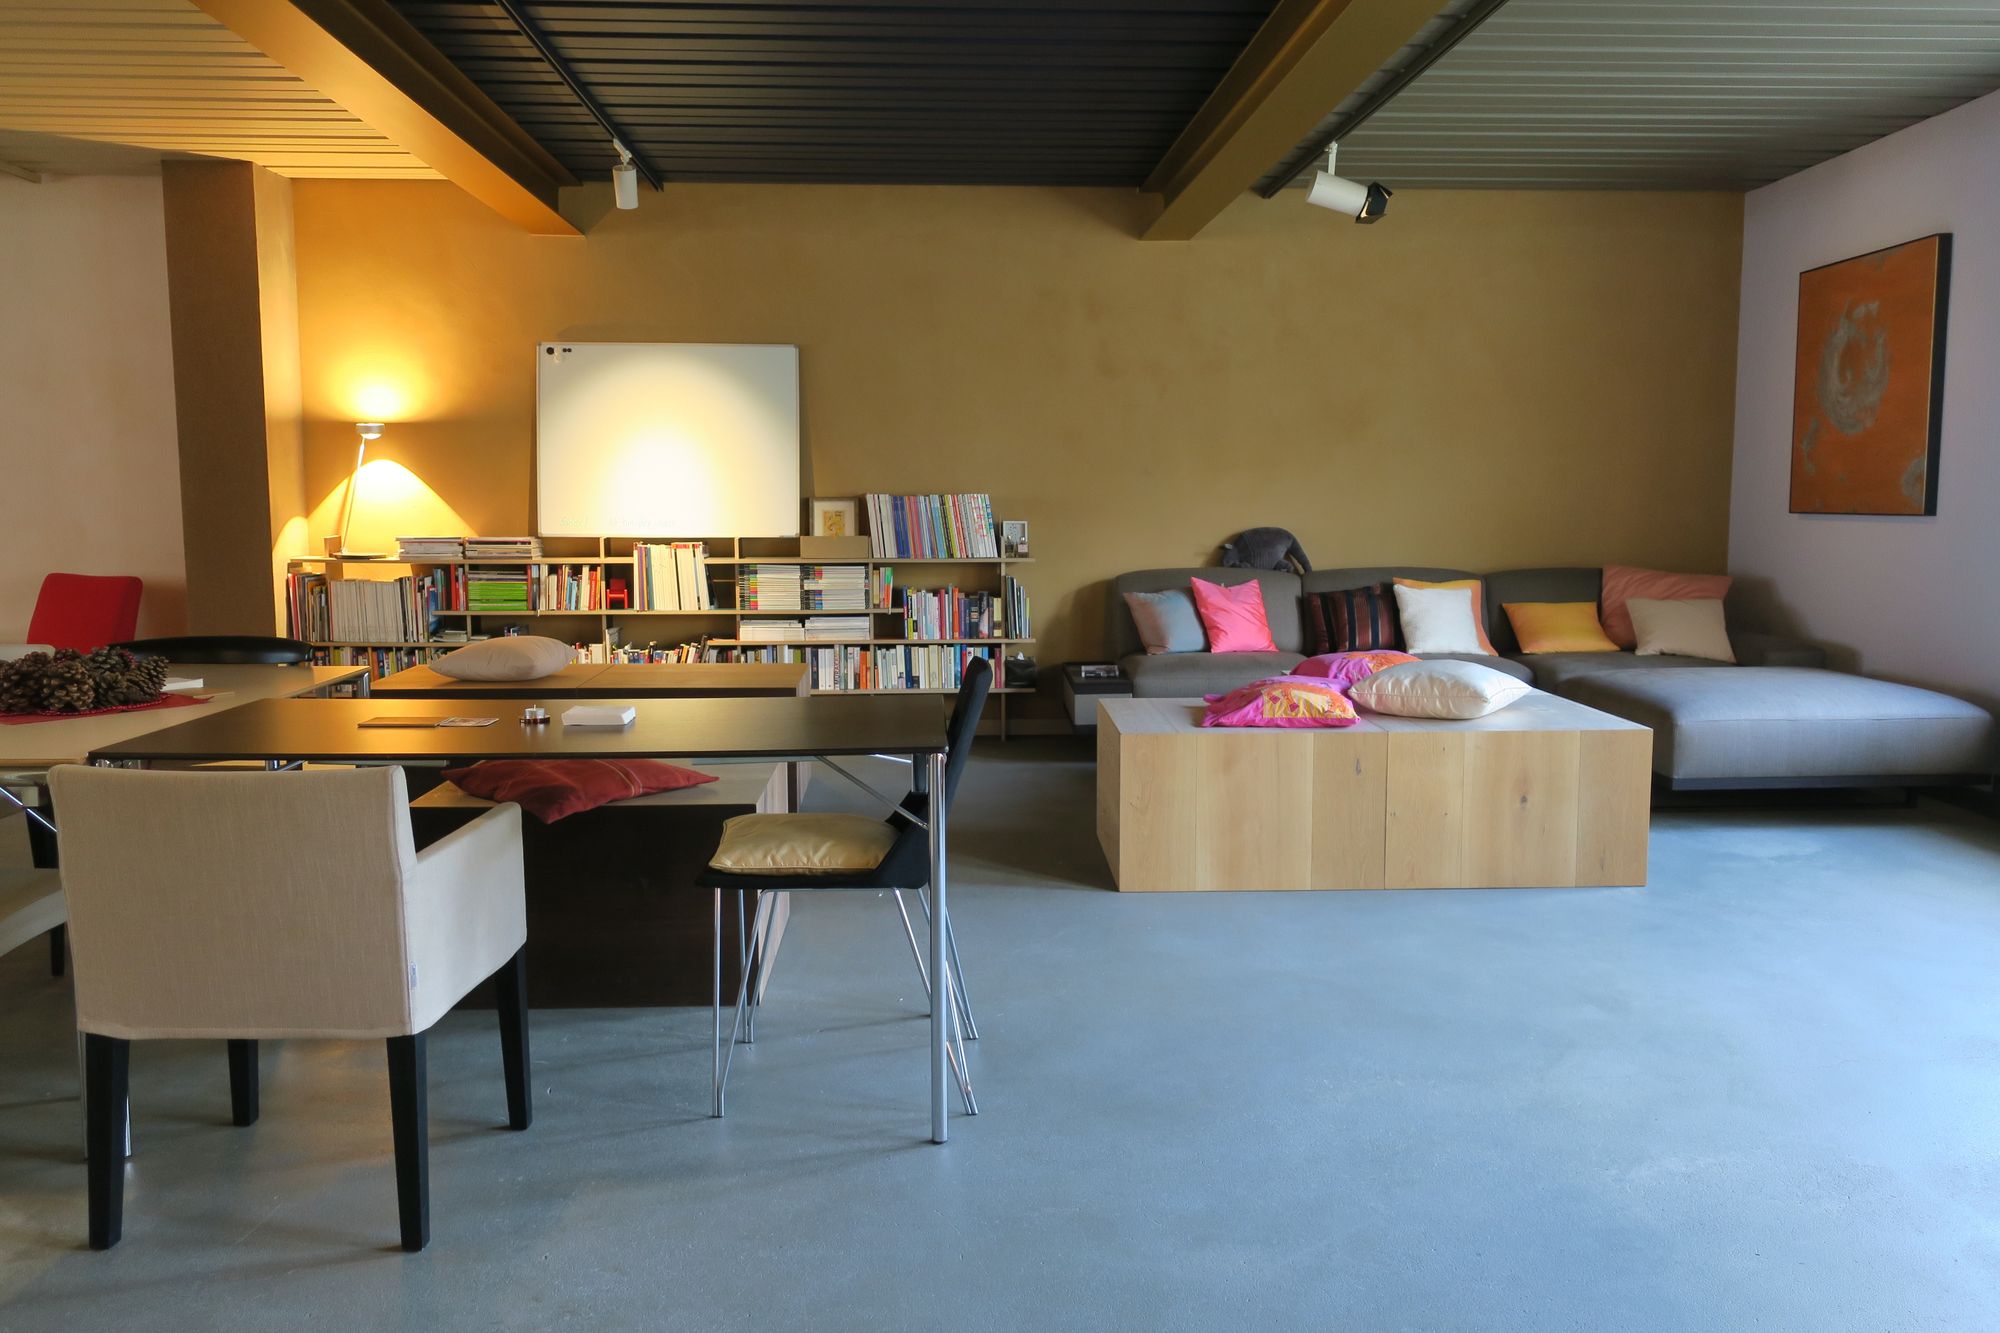 Planta de 1 quarto apartamento moderno. Foto: Ines Klemm no Unsplash